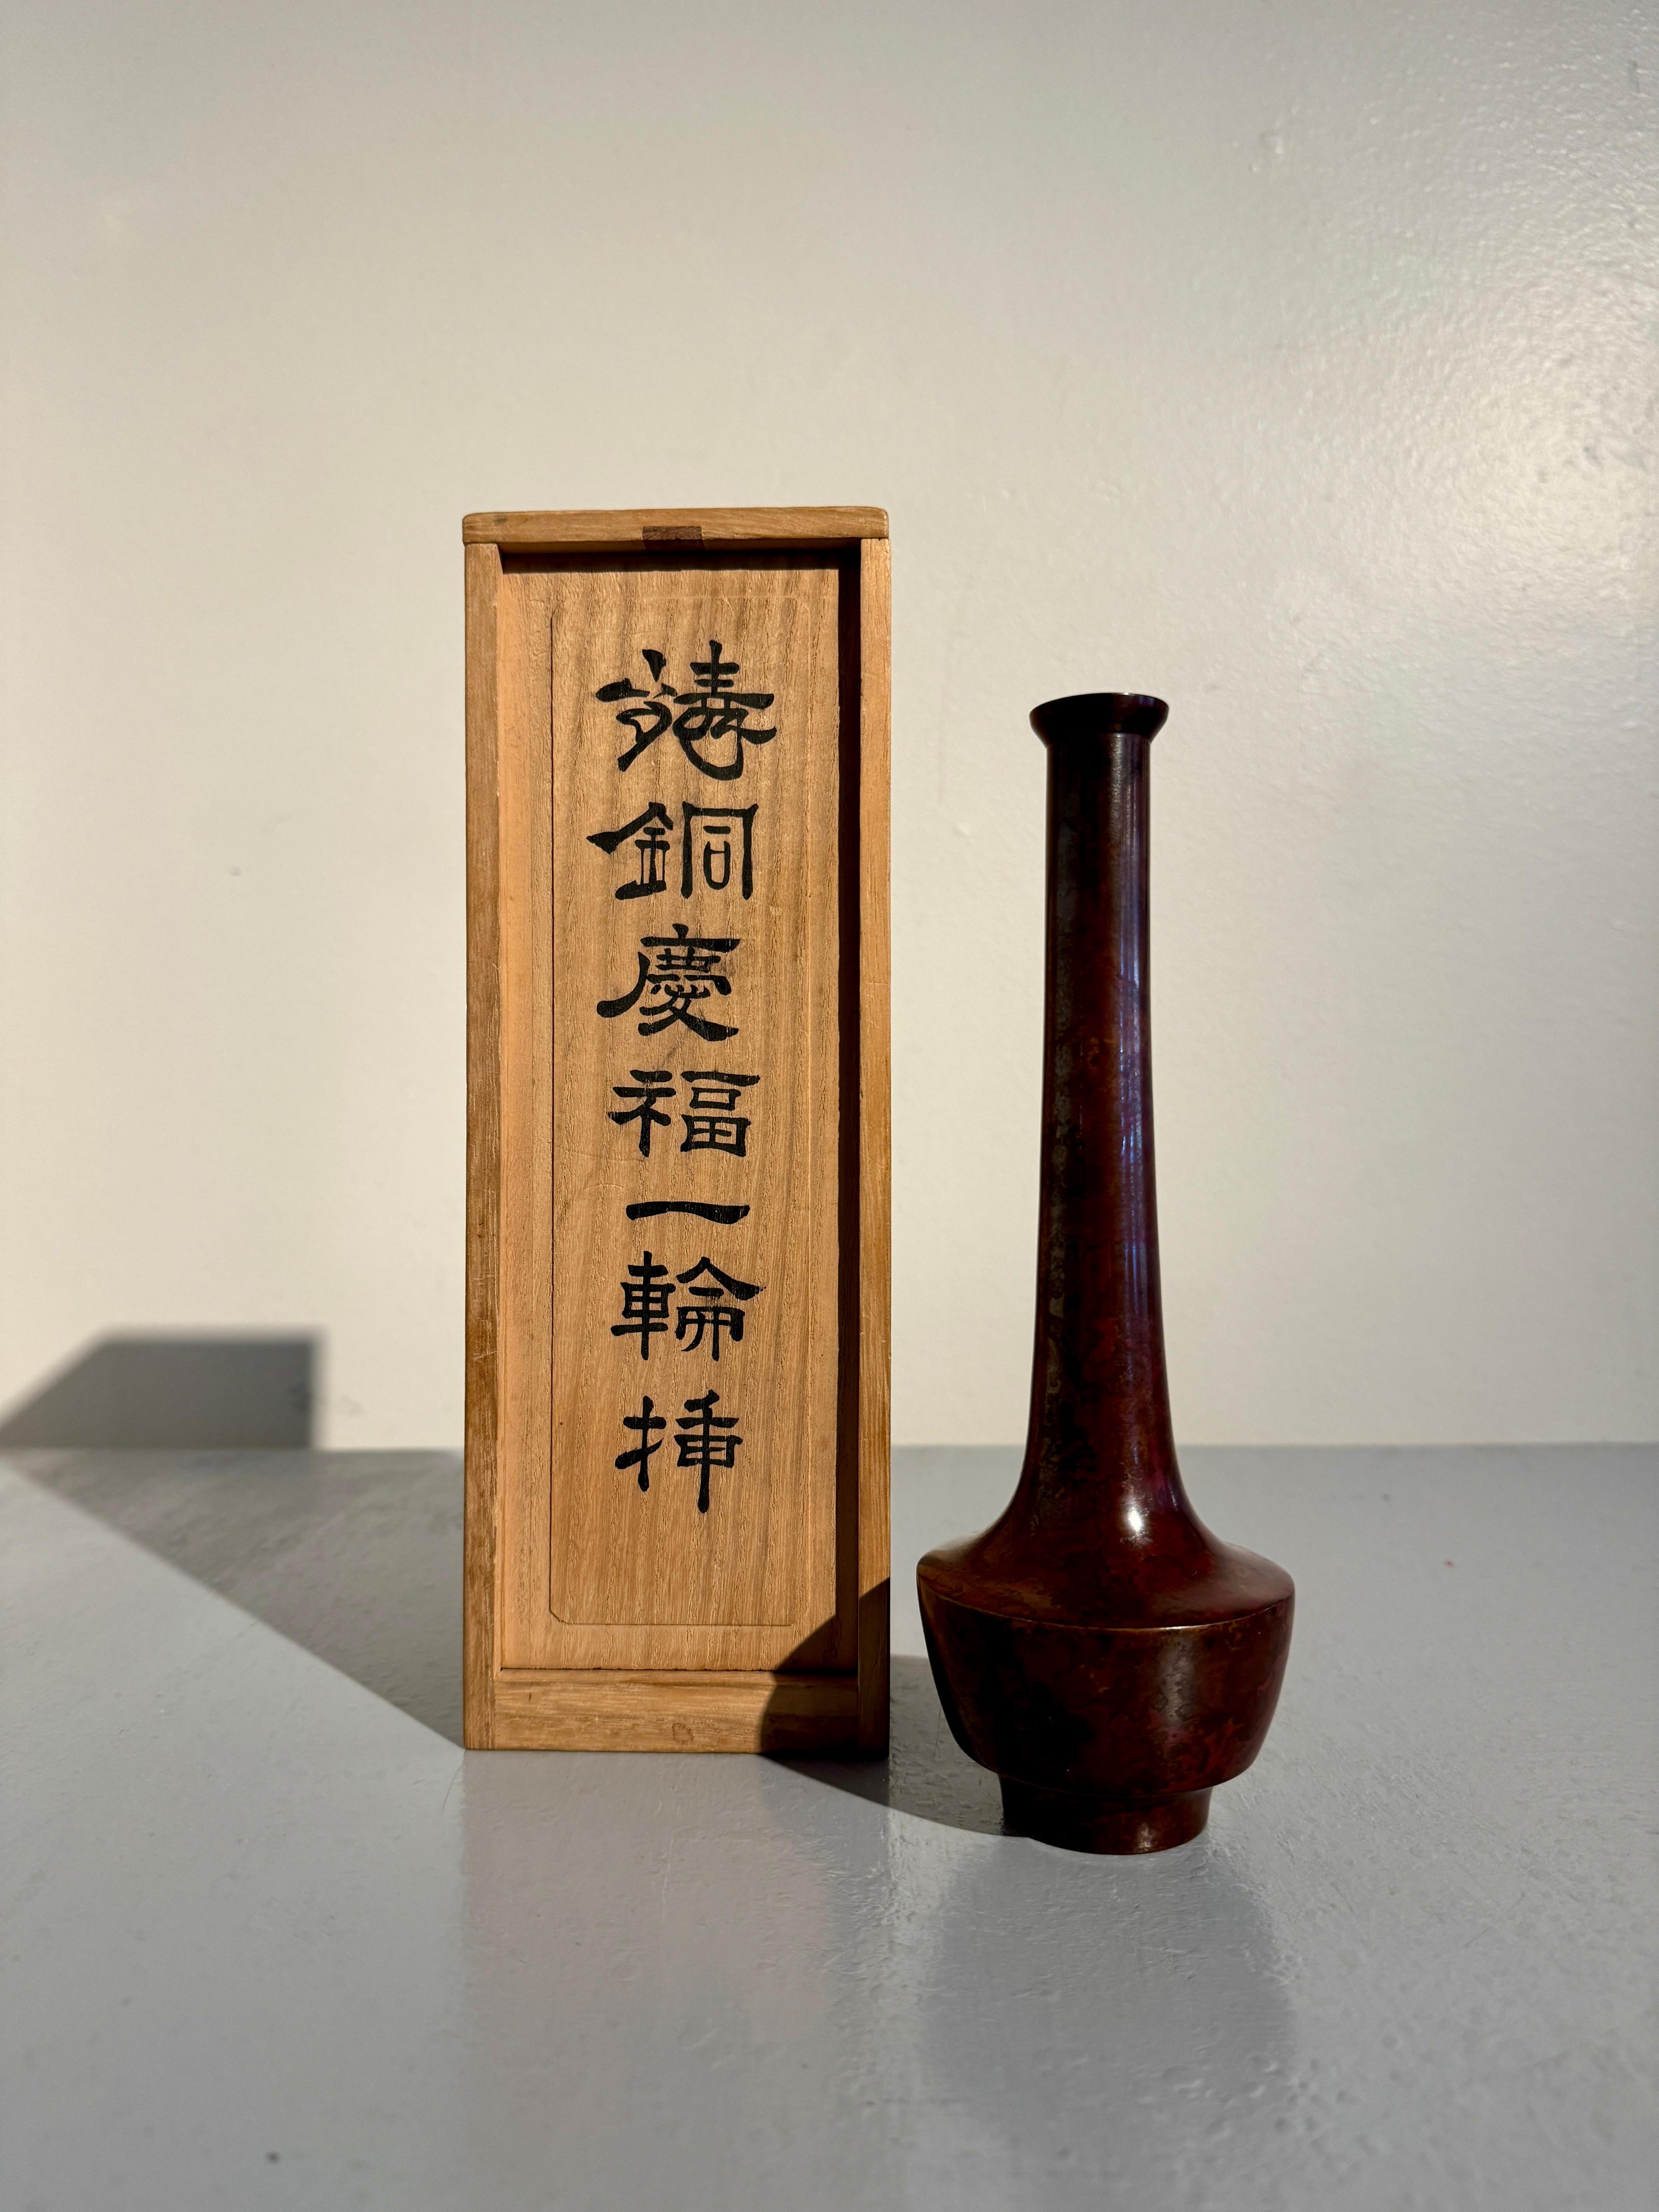 Eine elegante japanische Ikebana-Vase aus patinierter Bronze von Nakajima Yasumi II (1905 - 1986), um 1960, Osaka, Japan.

Die hohe Vase hat eine anmutige Form mit einem hohen runden Fuß, der einen becherförmigen Körper trägt, der zu einer scharfen,